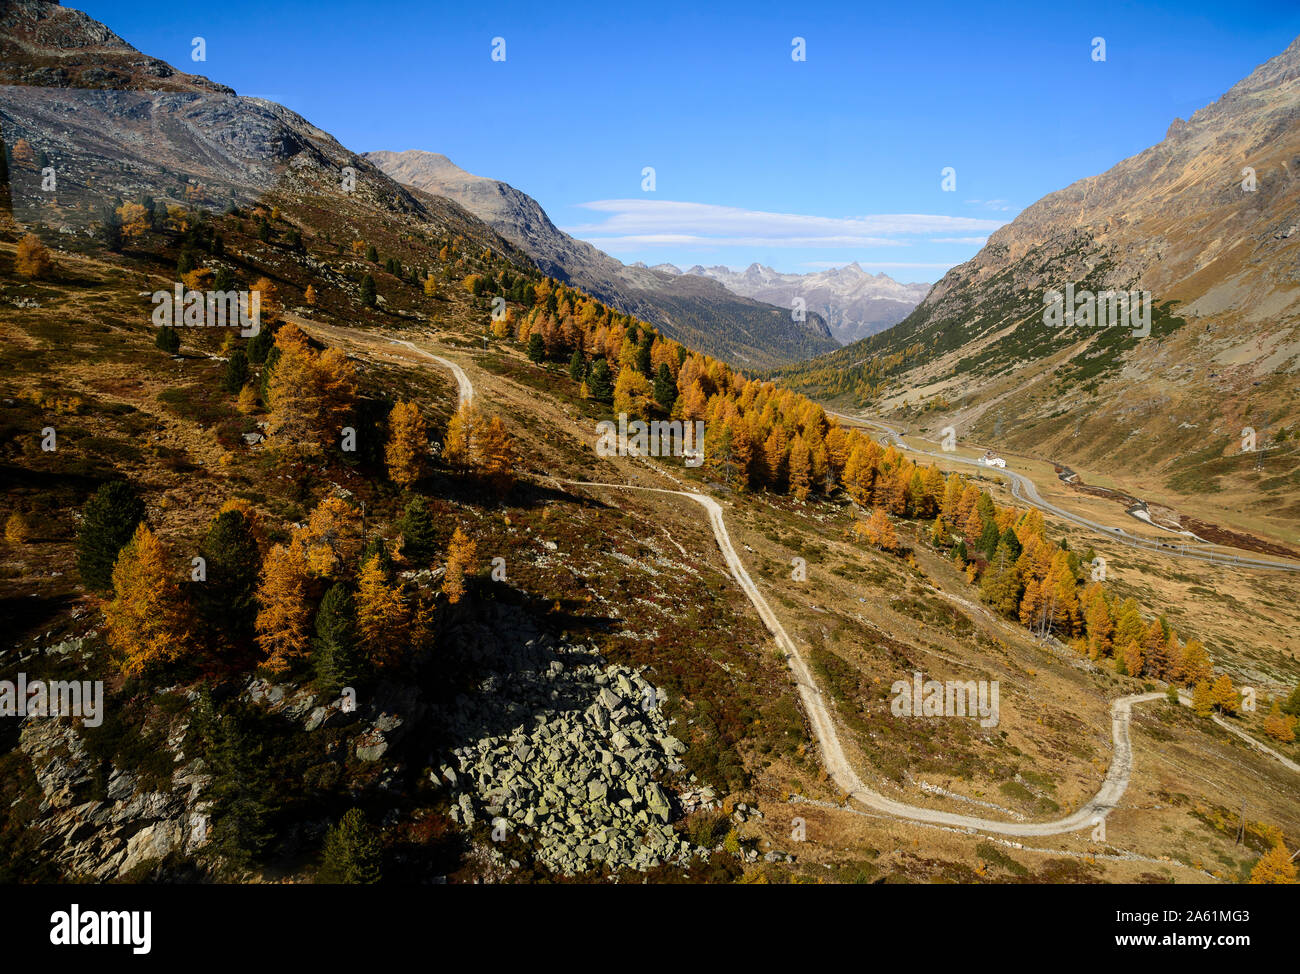 Blick von der Diavolezza Seilbahn auf das Bernina Tal, Grigioni, Schweiz, Europa Foto Stock